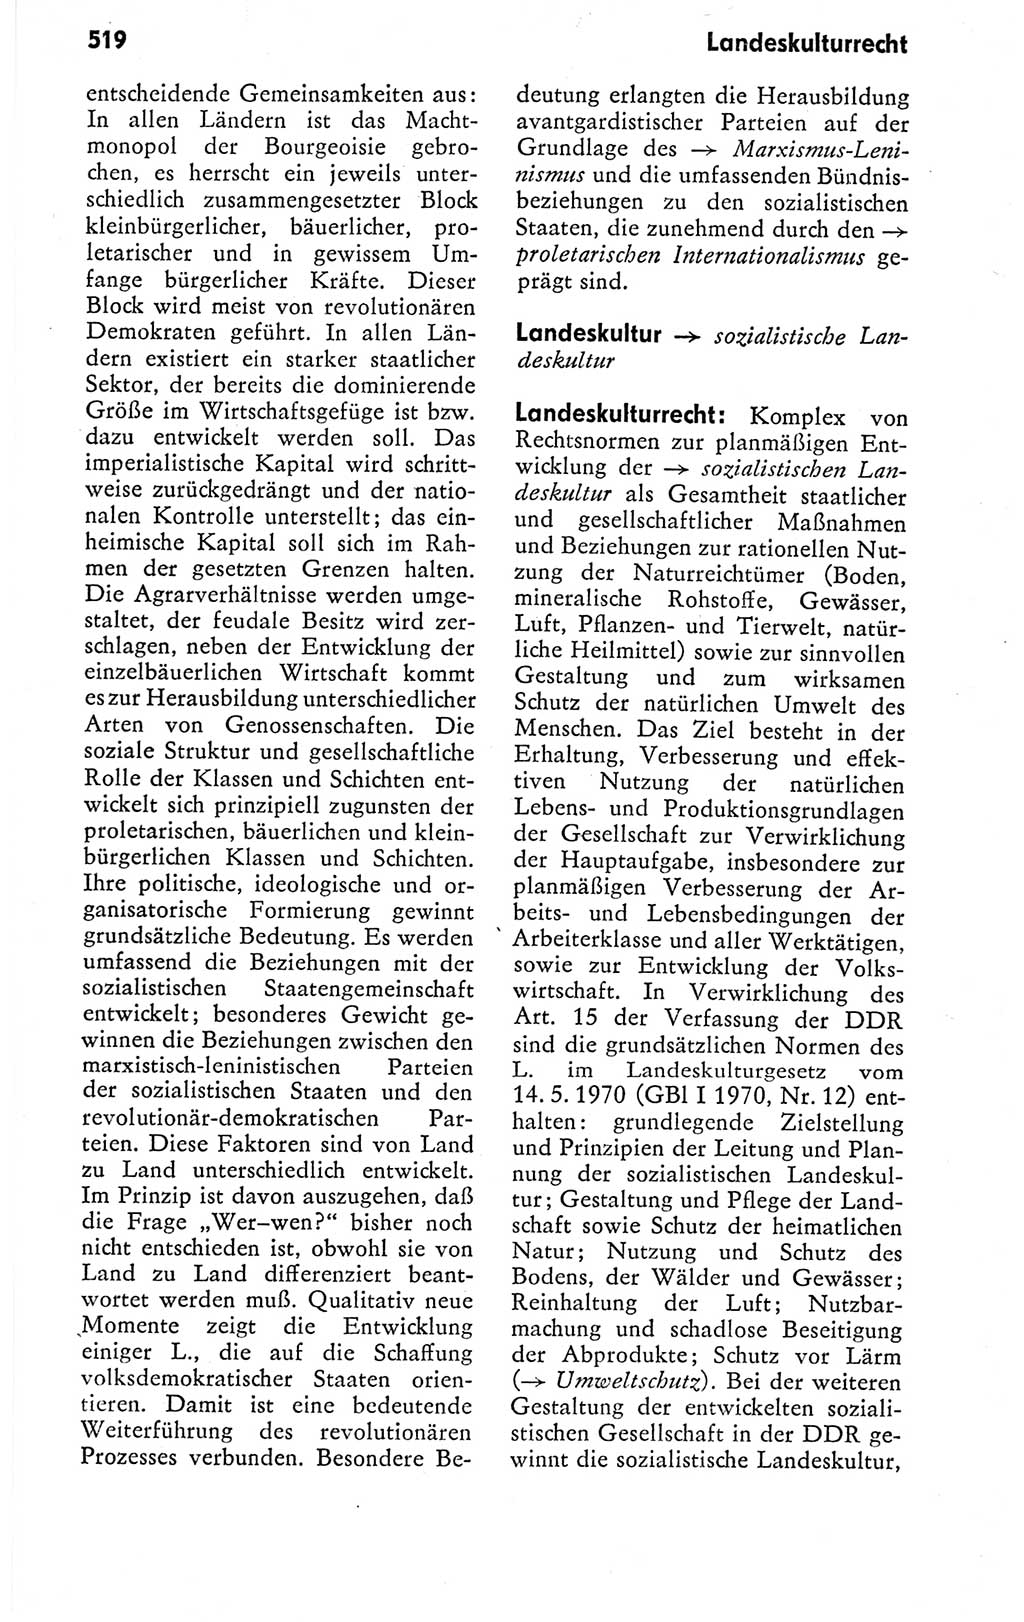 Kleines politisches Wörterbuch [Deutsche Demokratische Republik (DDR)] 1978, Seite 519 (Kl. pol. Wb. DDR 1978, S. 519)